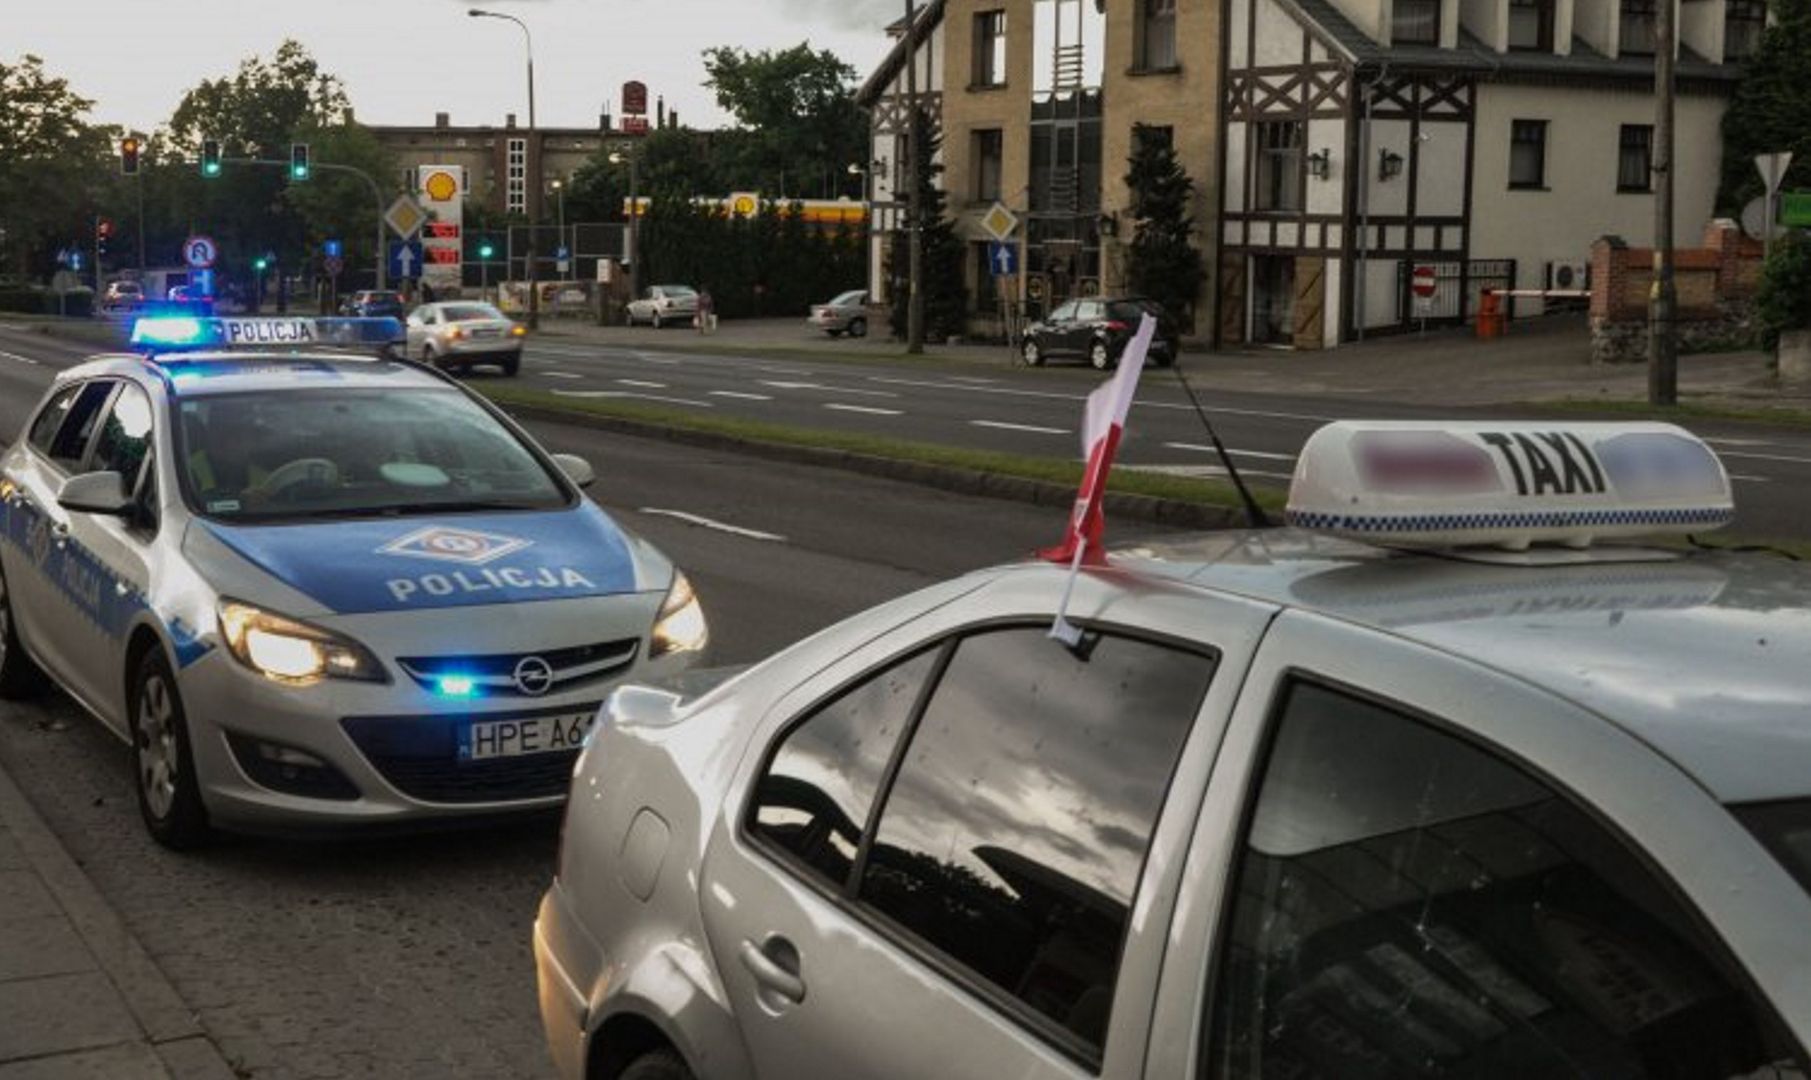 Napadli na taksówkarza w centrum Warszawy. Tak się tłumaczył 16-latek